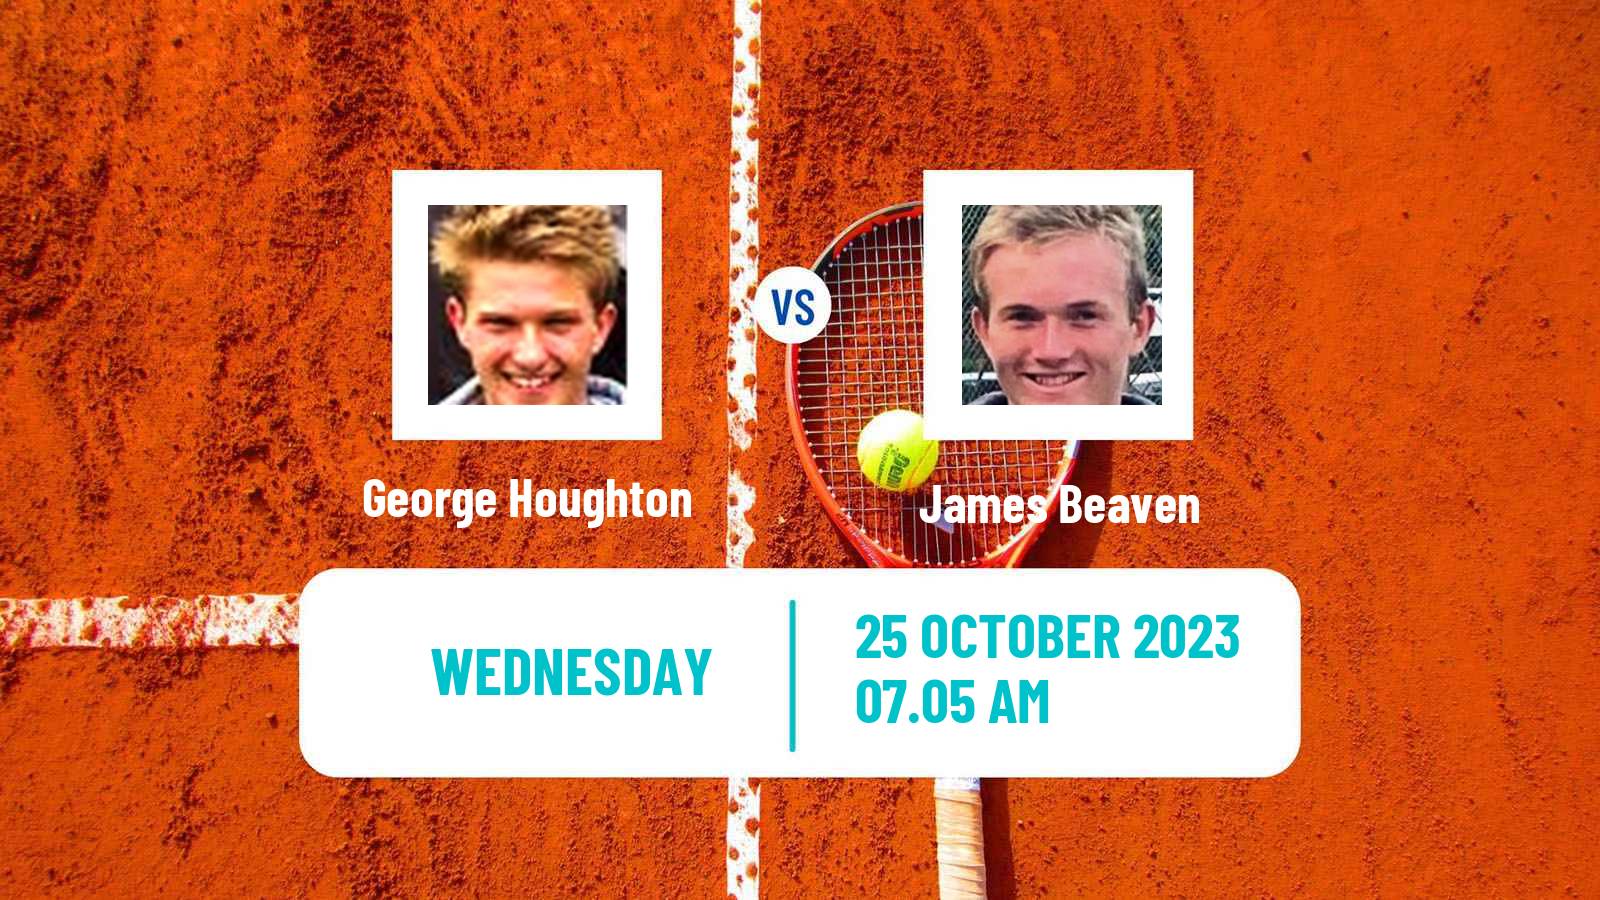 Tennis ITF M25 Glasgow Men George Houghton - James Beaven